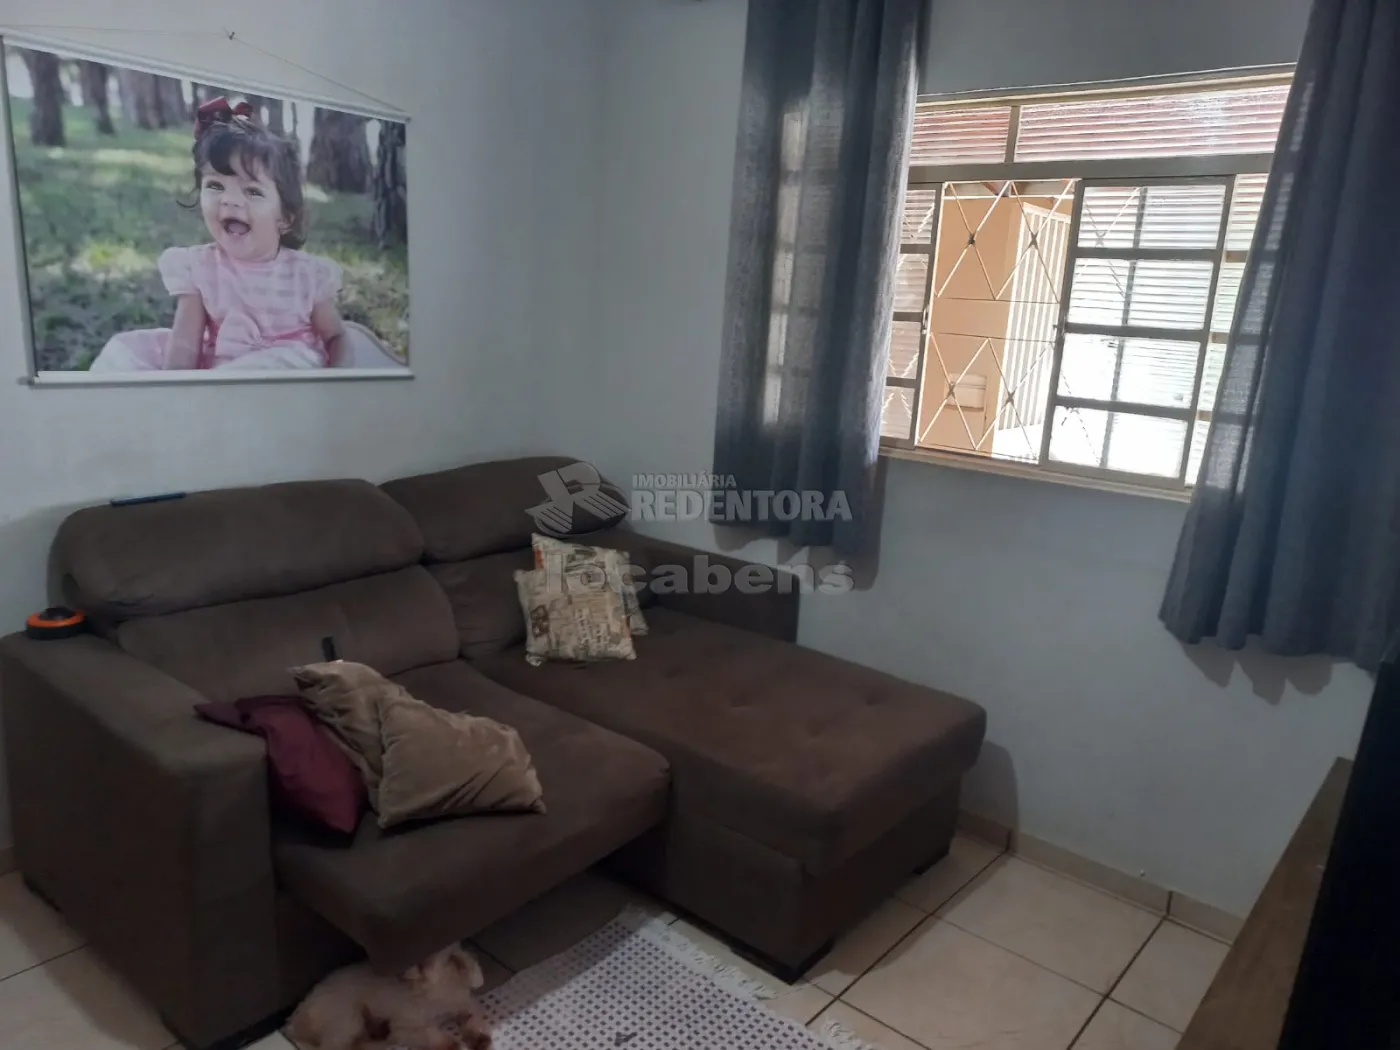 Comprar Casa / Padrão em São José do Rio Preto apenas R$ 300.000,00 - Foto 16